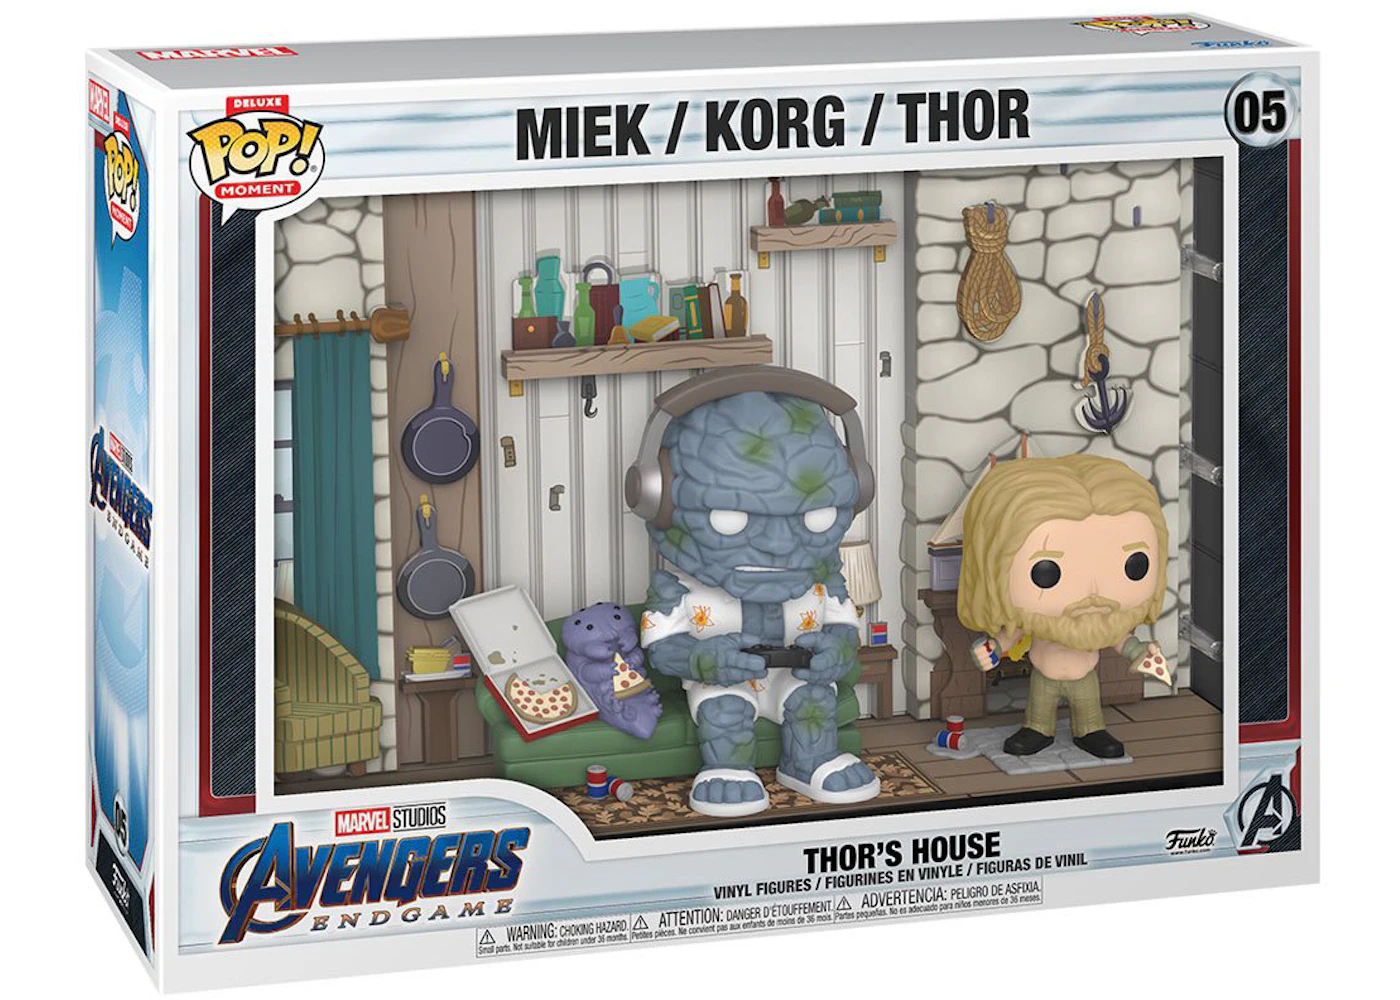 Funko Pop! Deluxe Moment Marvel Studios Avengers: Endgame Thor's House  Figure #05 - US